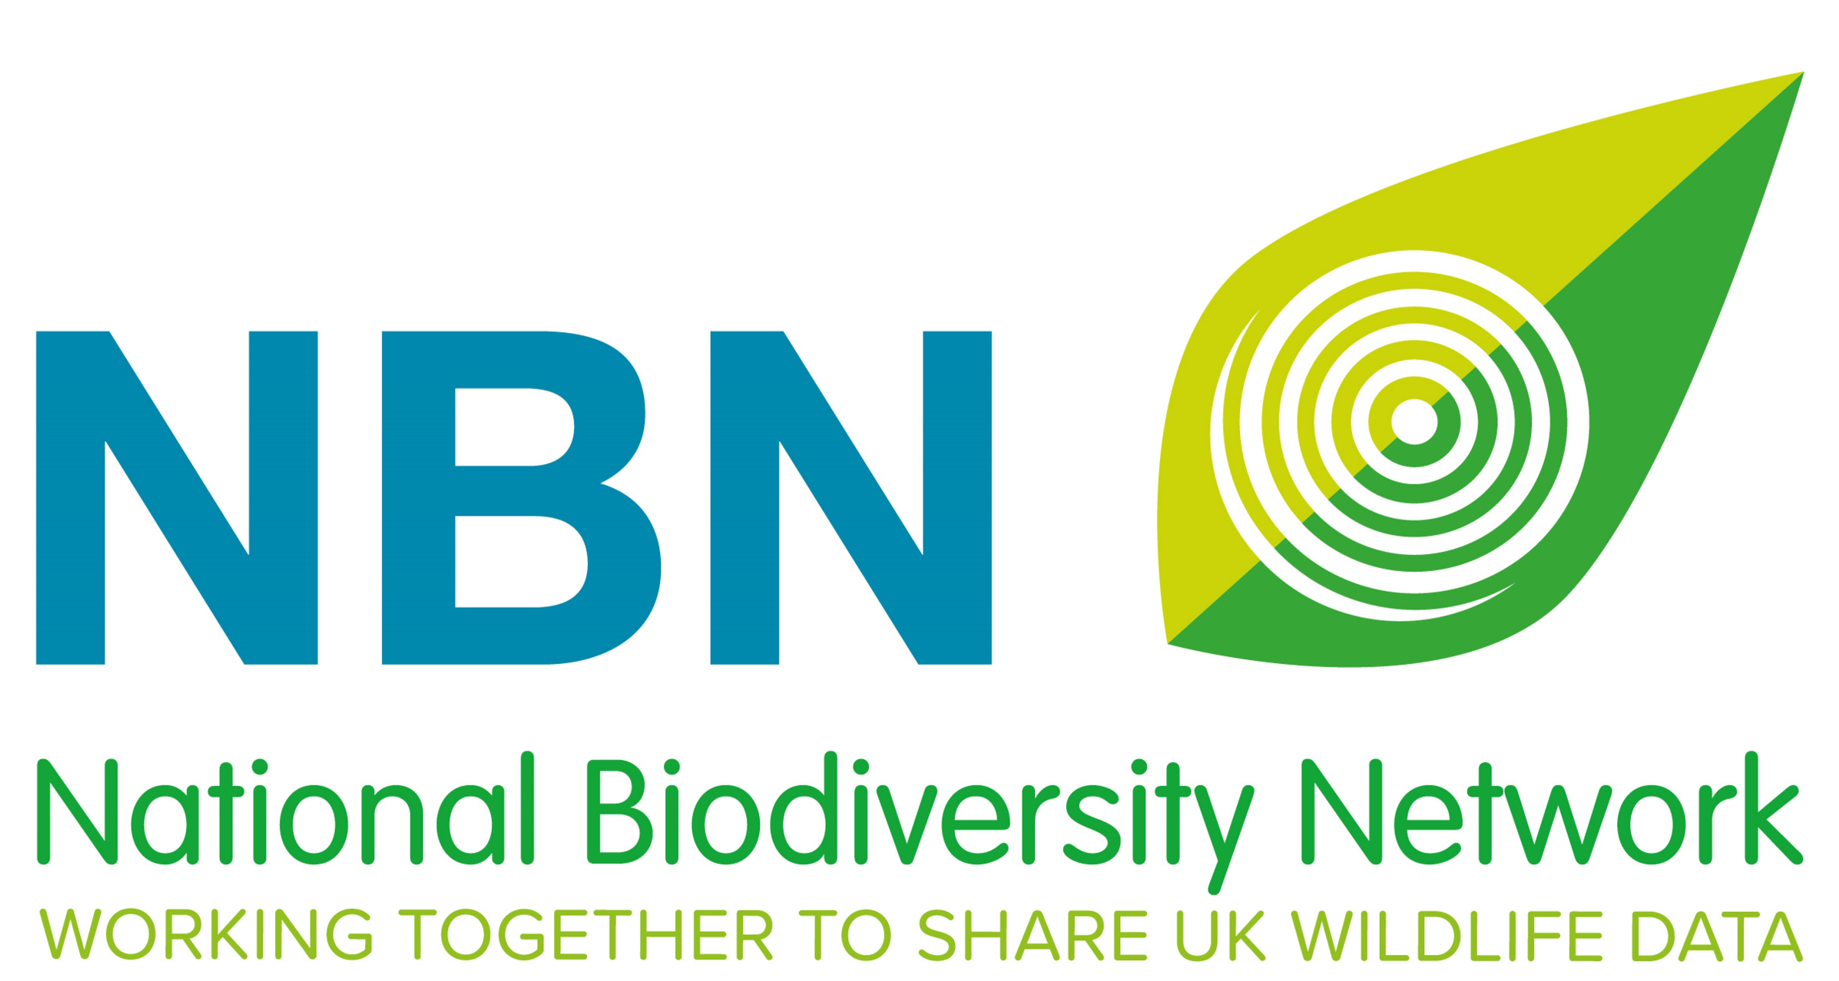 National Biodiversity Network